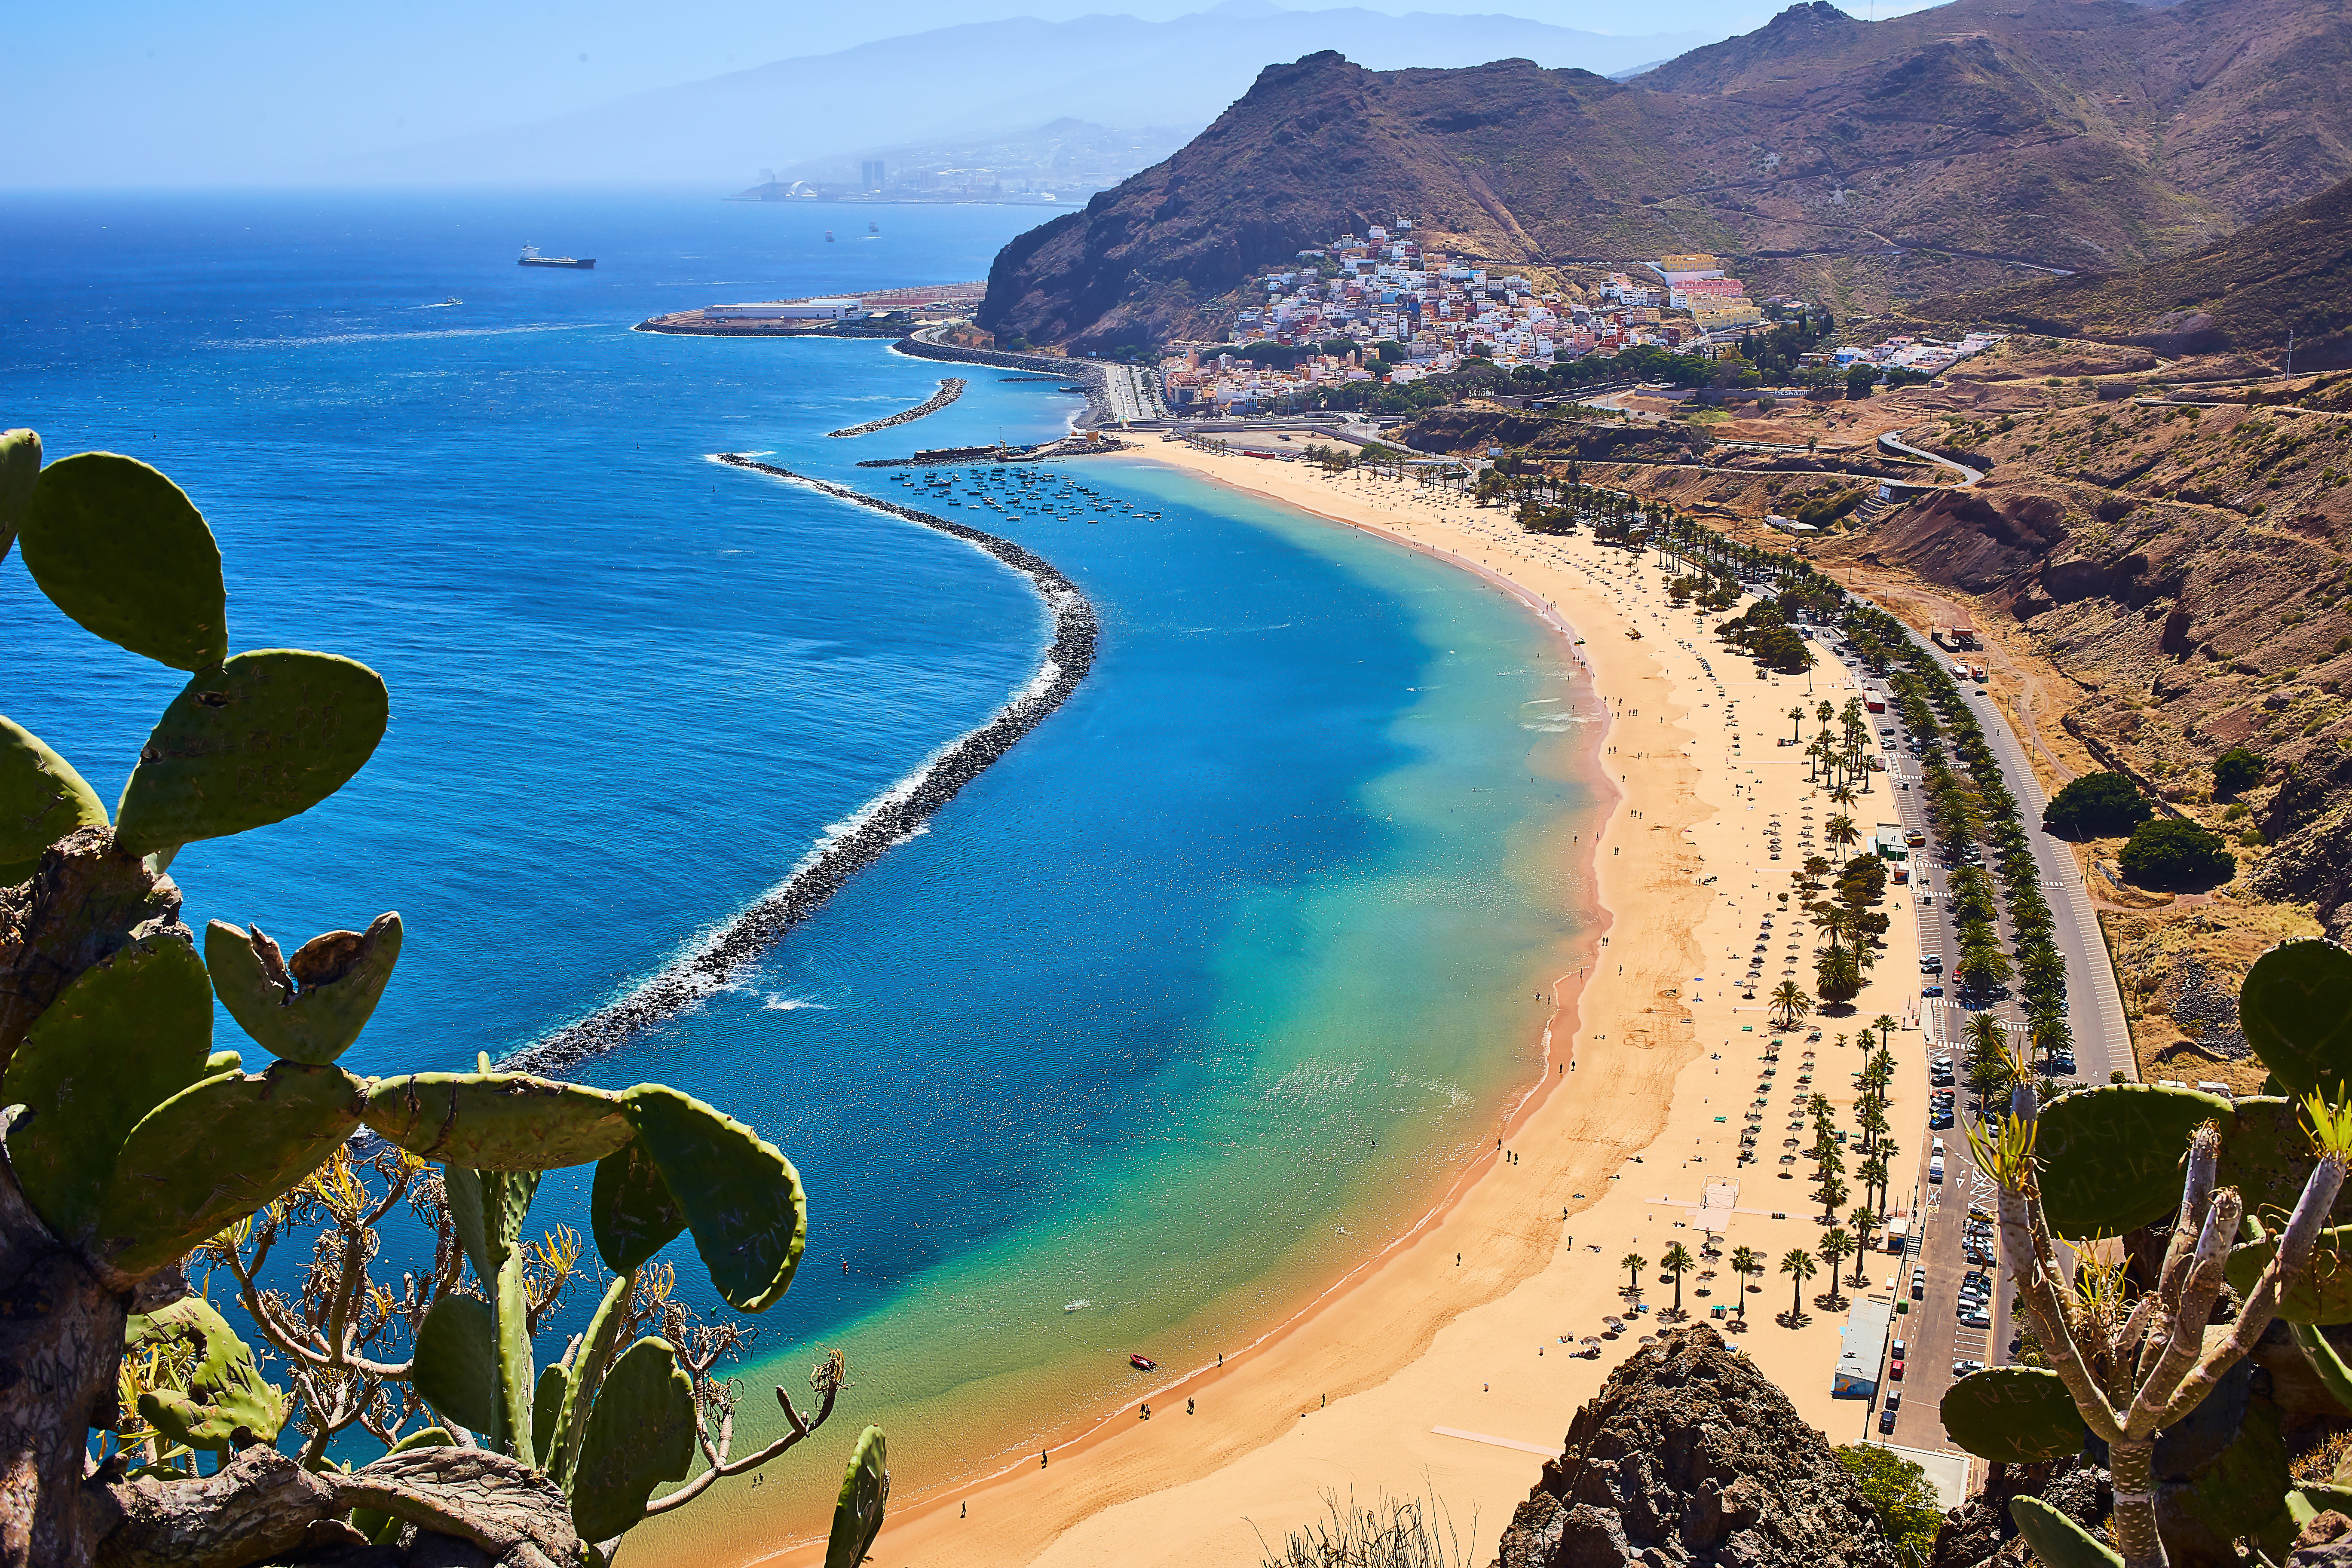 Irlandezii își rezervă controale la stomatolog în Tenerife, pentru a putea ieși din țară, în contextul restricțiilor impuse